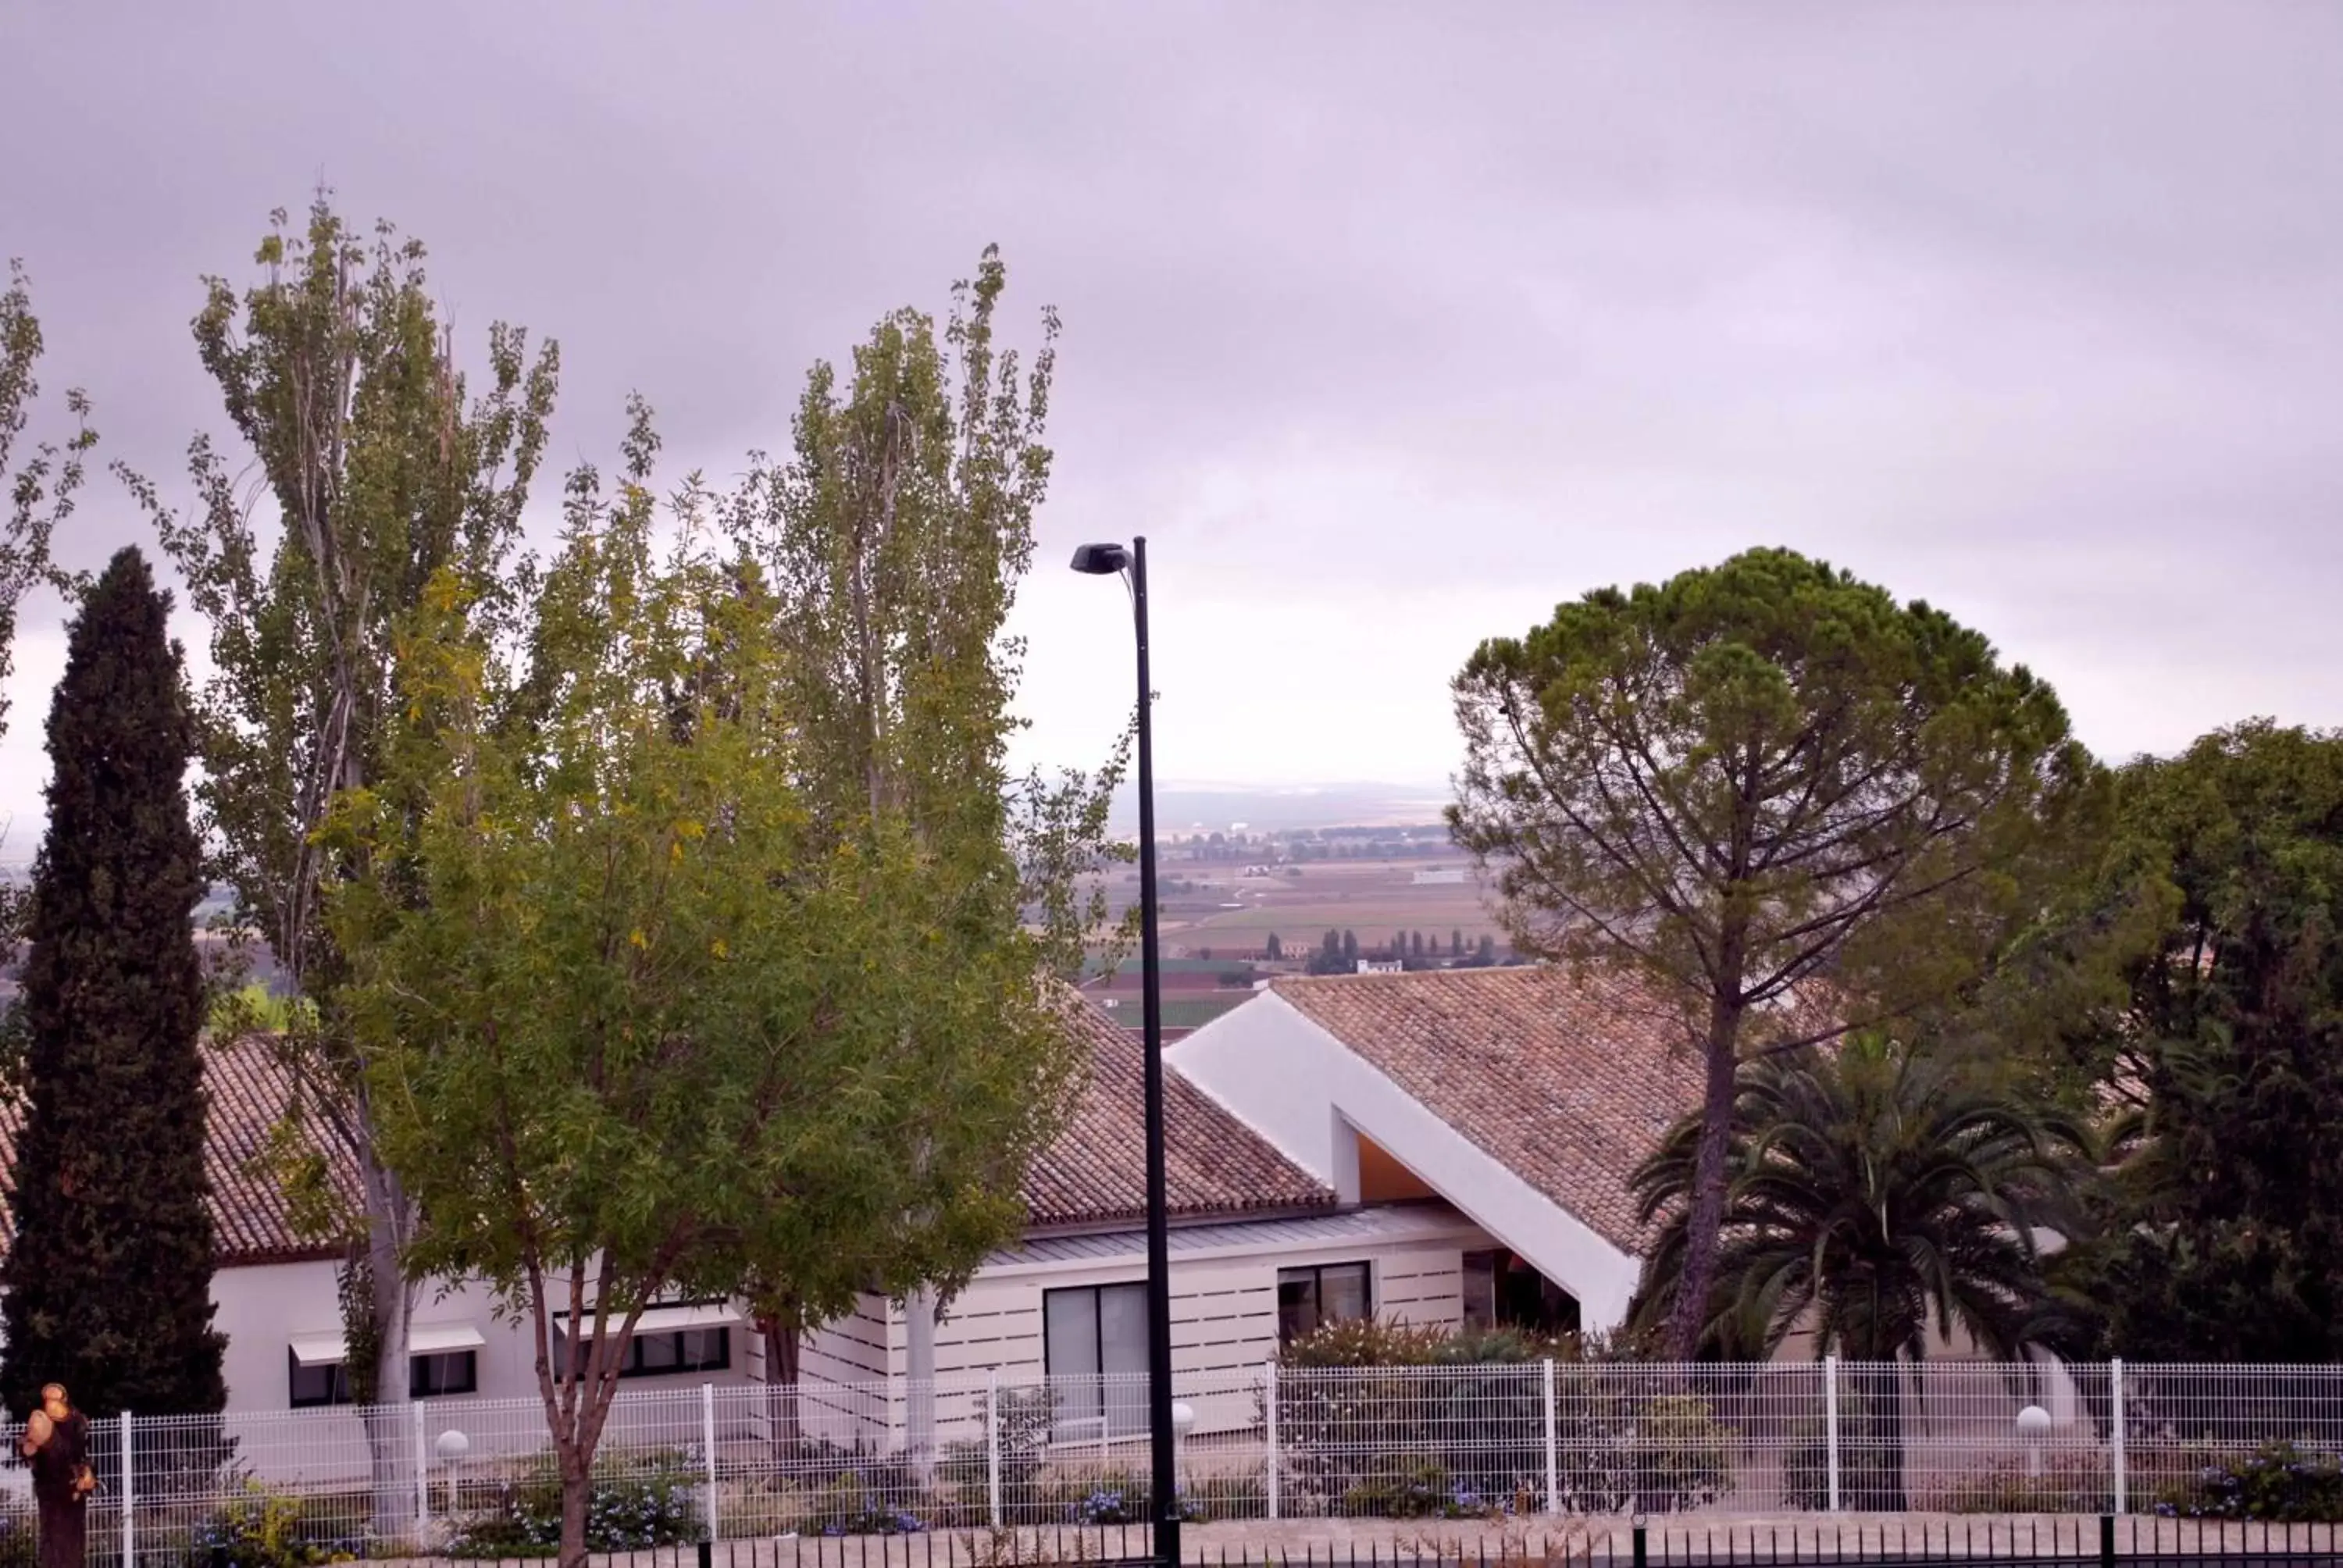 Area and facilities in Parador de Antequera